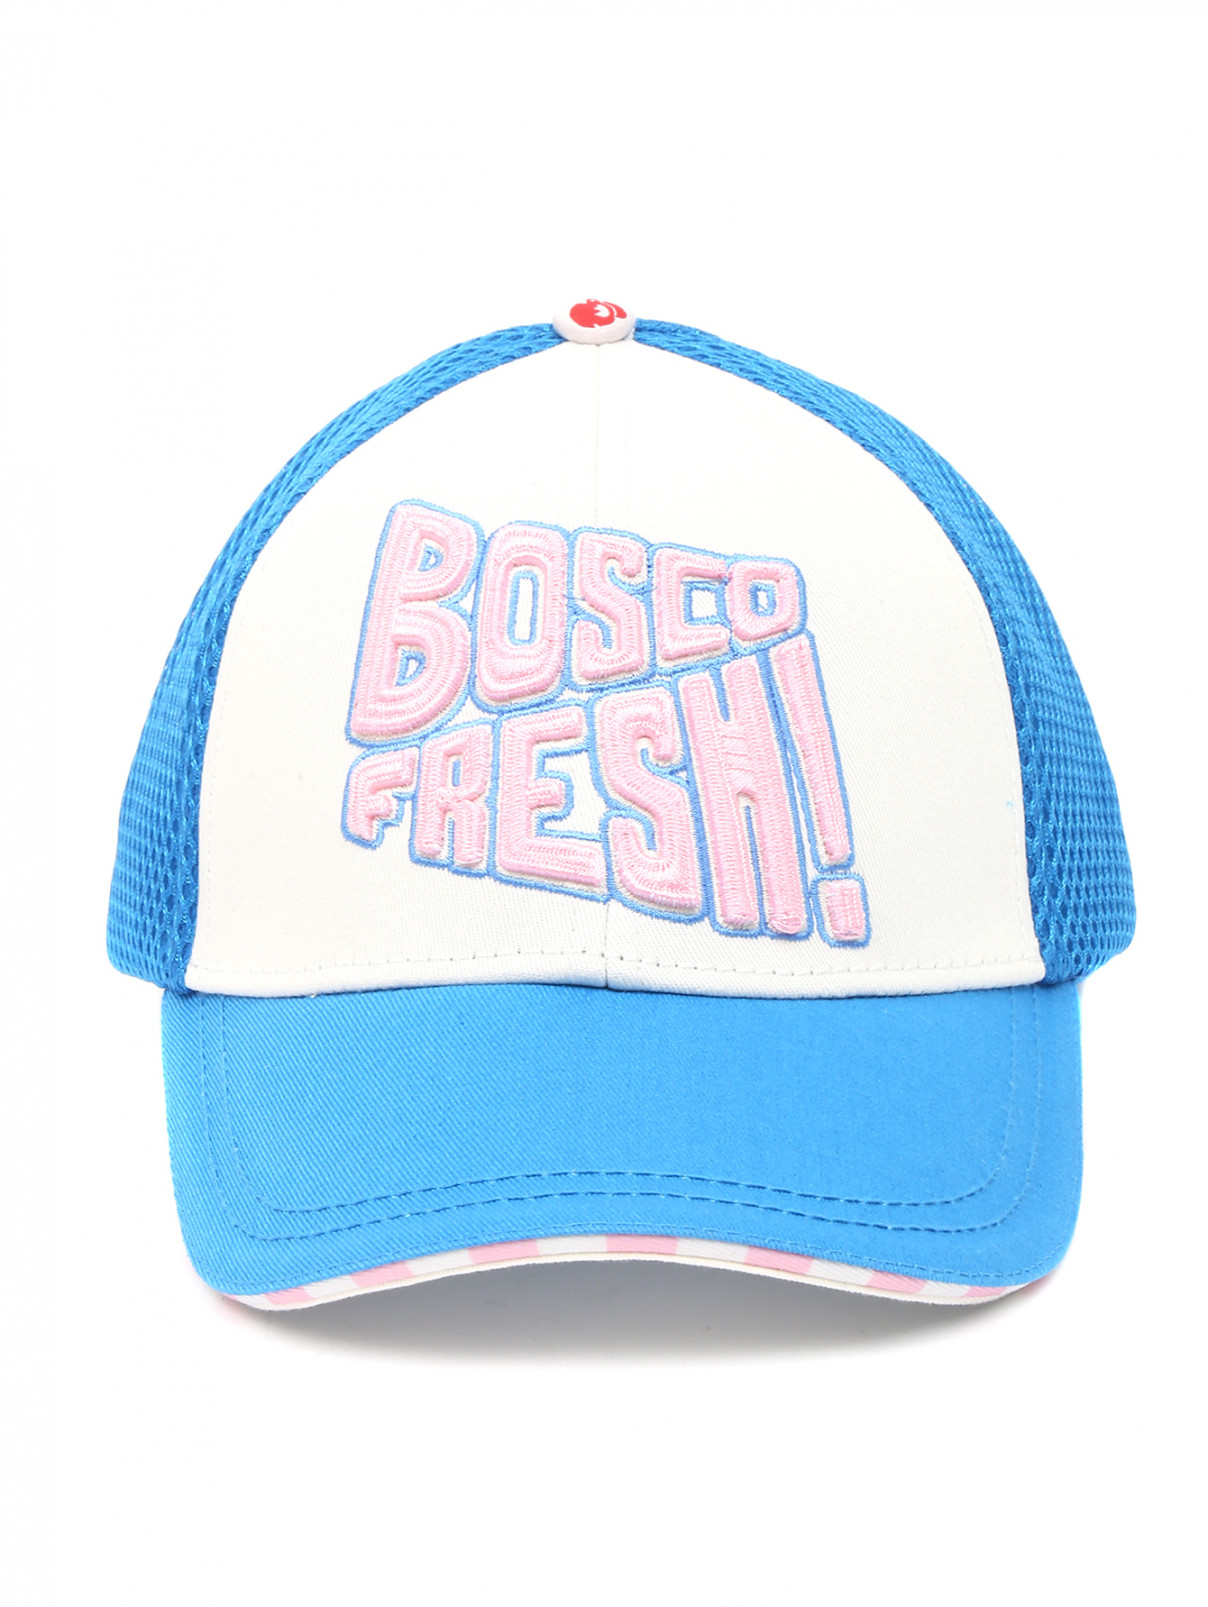 Бейсболка из хлопка с декоративной вышивкой BOSCO  –  Общий вид  – Цвет:  Синий